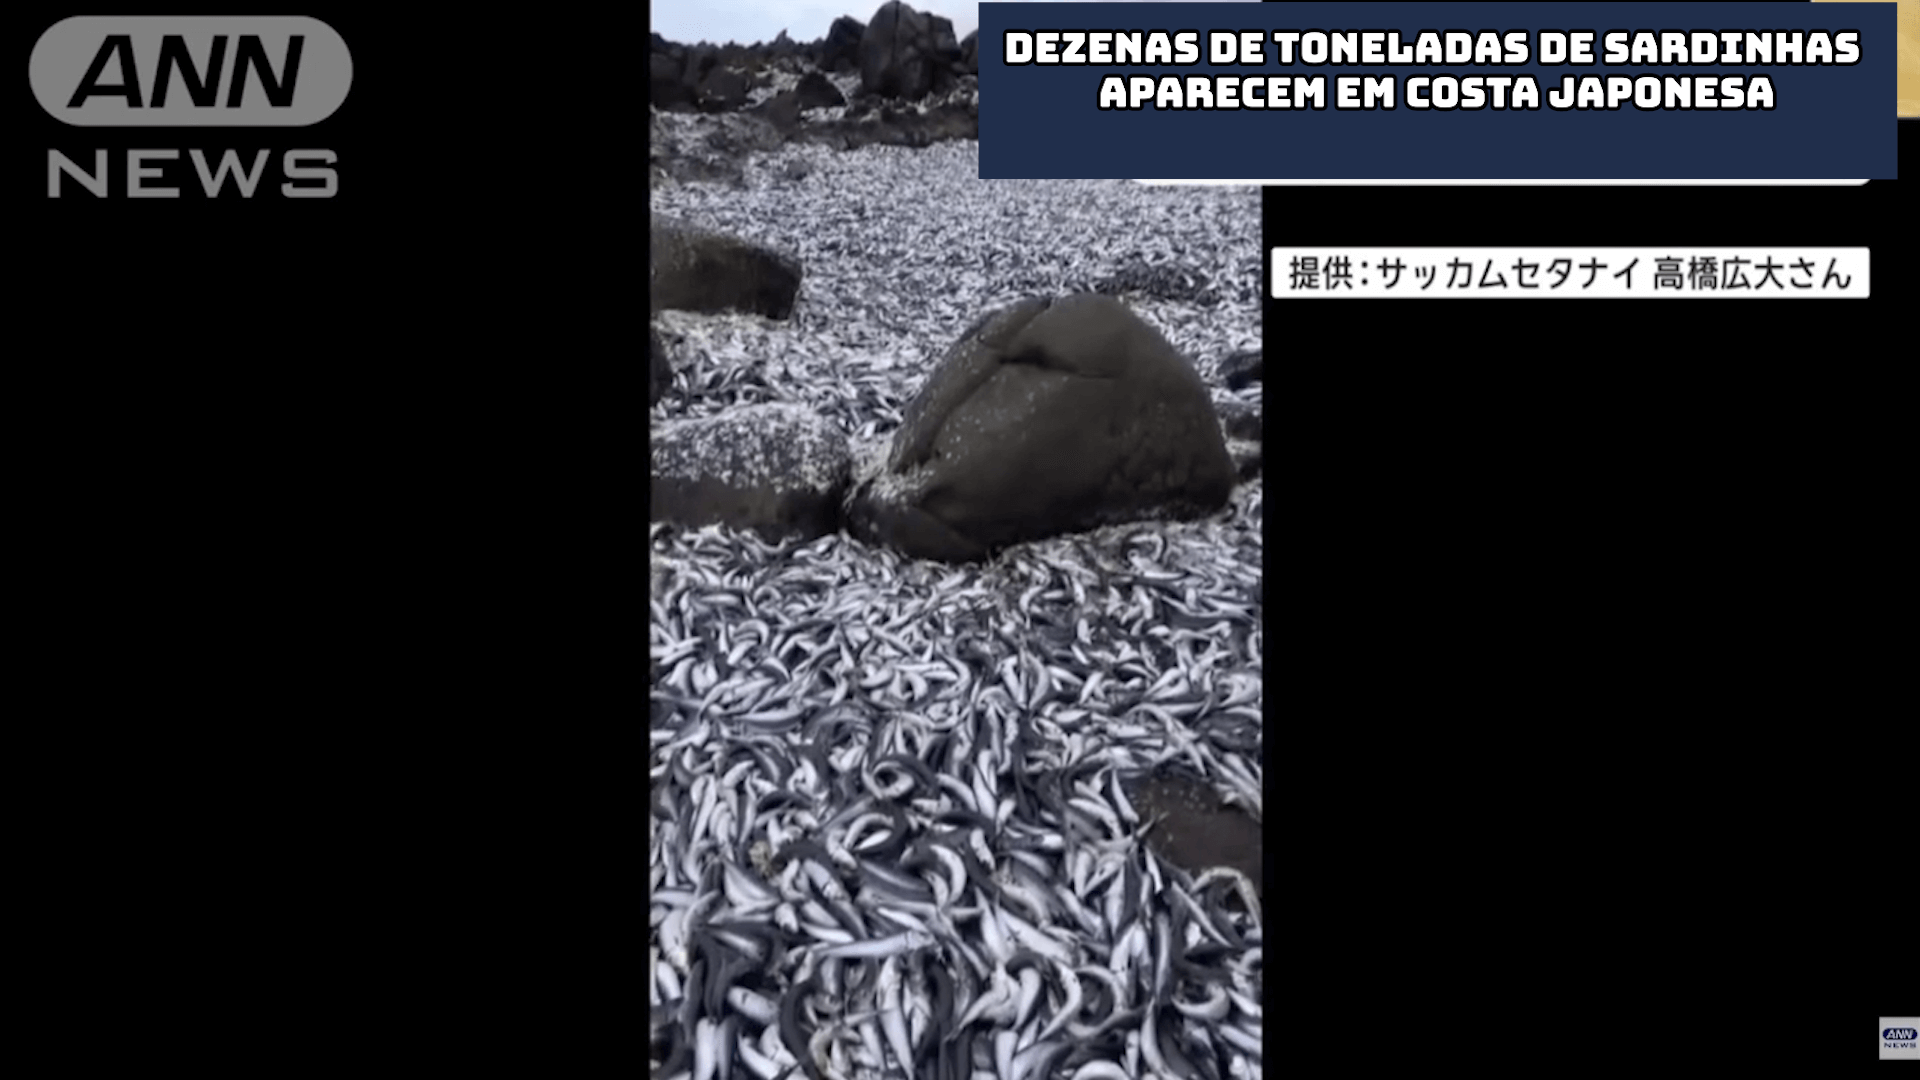 Dezenas de toneladas de sardinhas aparecem em costa japonesa 